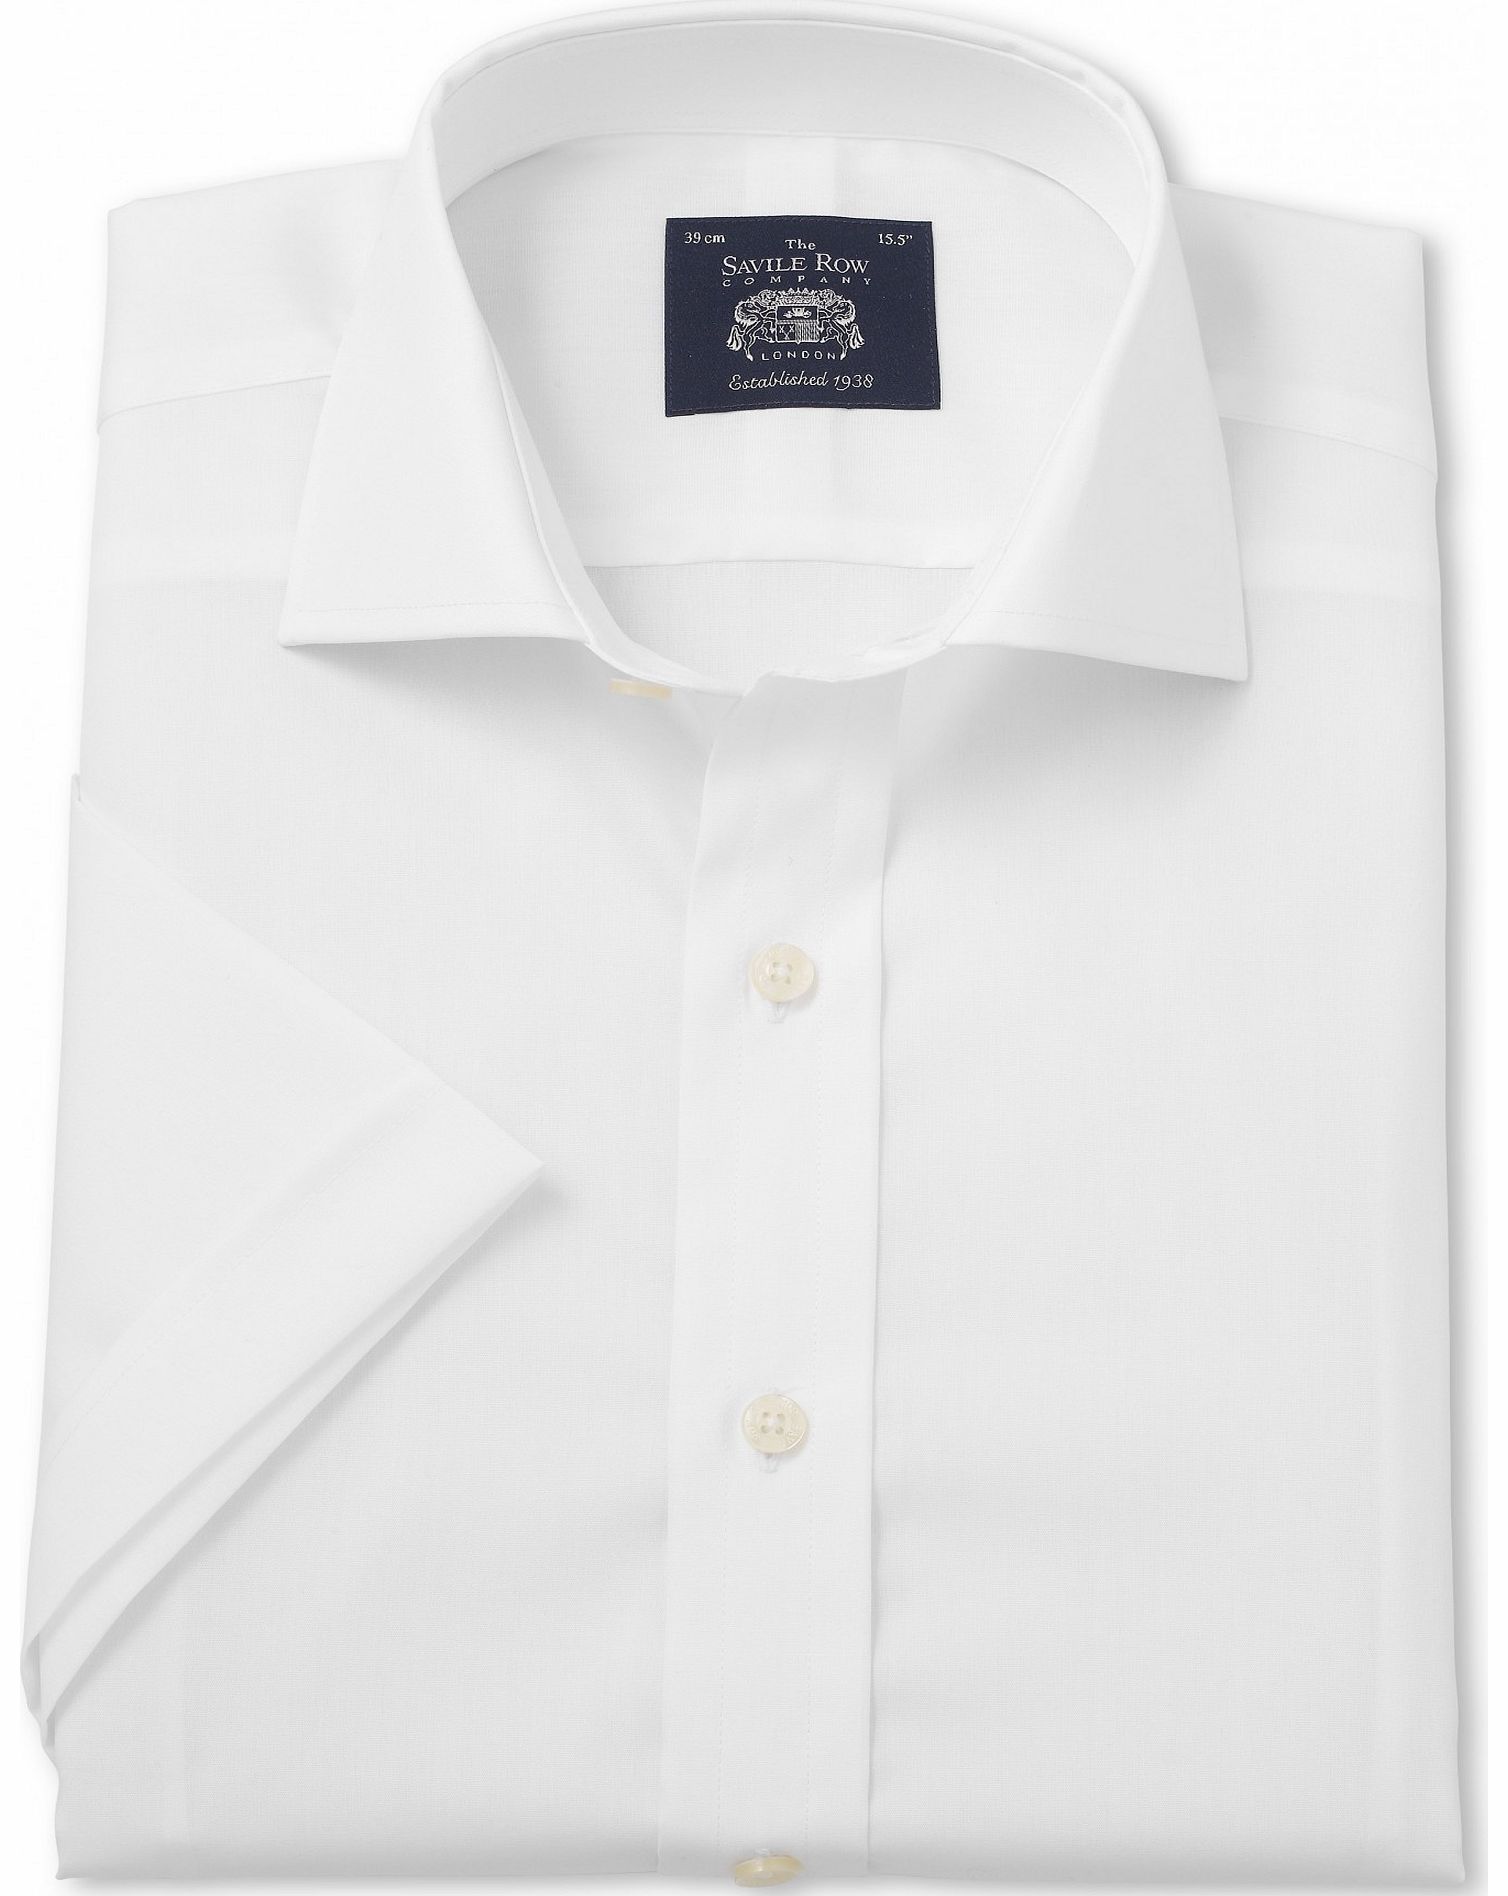 Savile Row Company White Slim Fit Short Sleeve Shirt 16`` Short